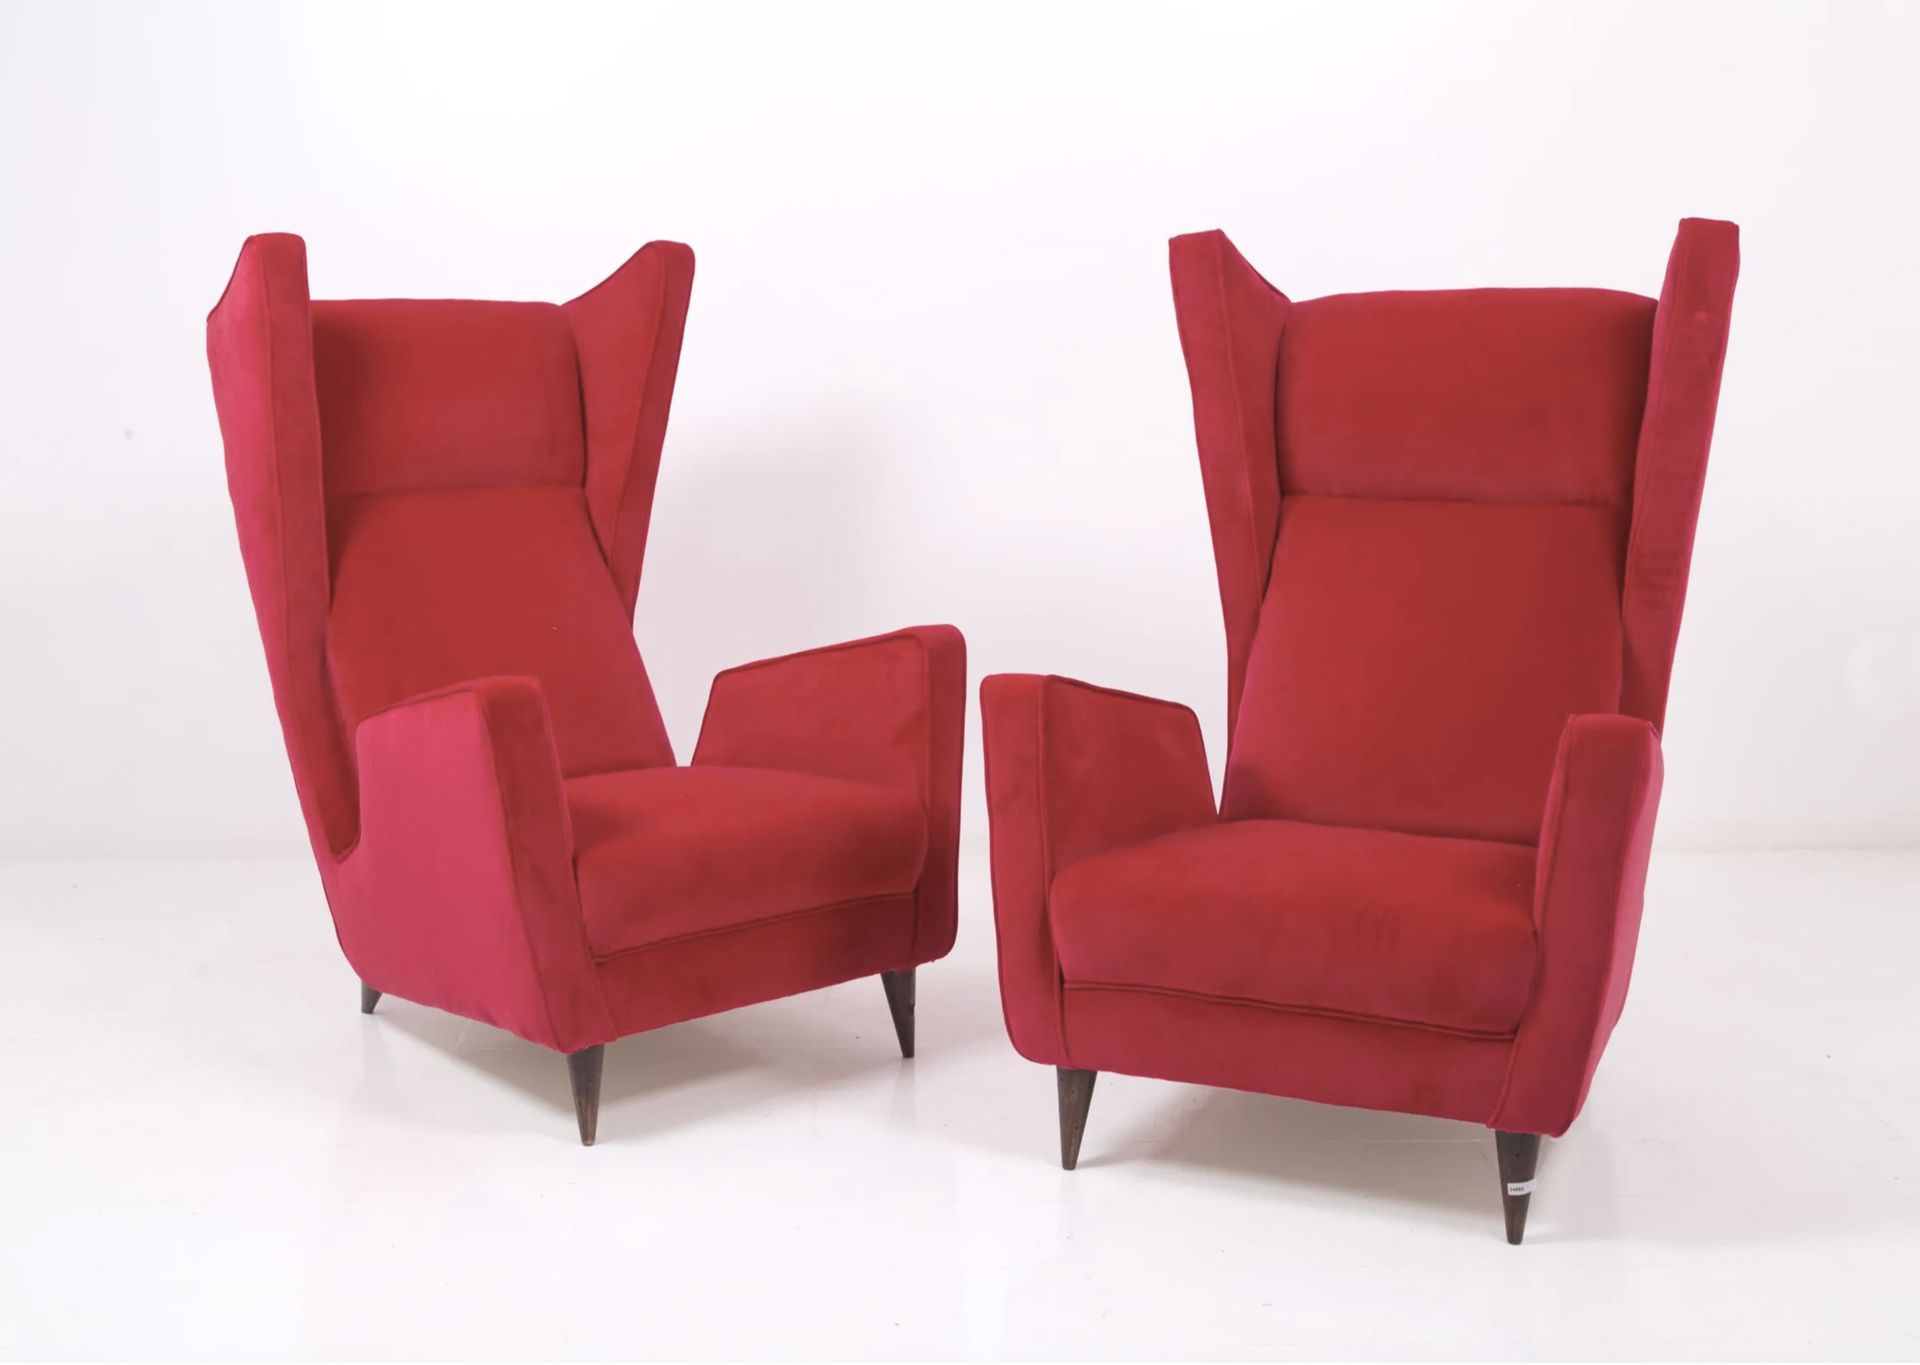 MARIO OREGLIA. Two red armchairs. 1940s MARIO OREGLIA (Fossano, 1916 - Turin, 19&hellip;